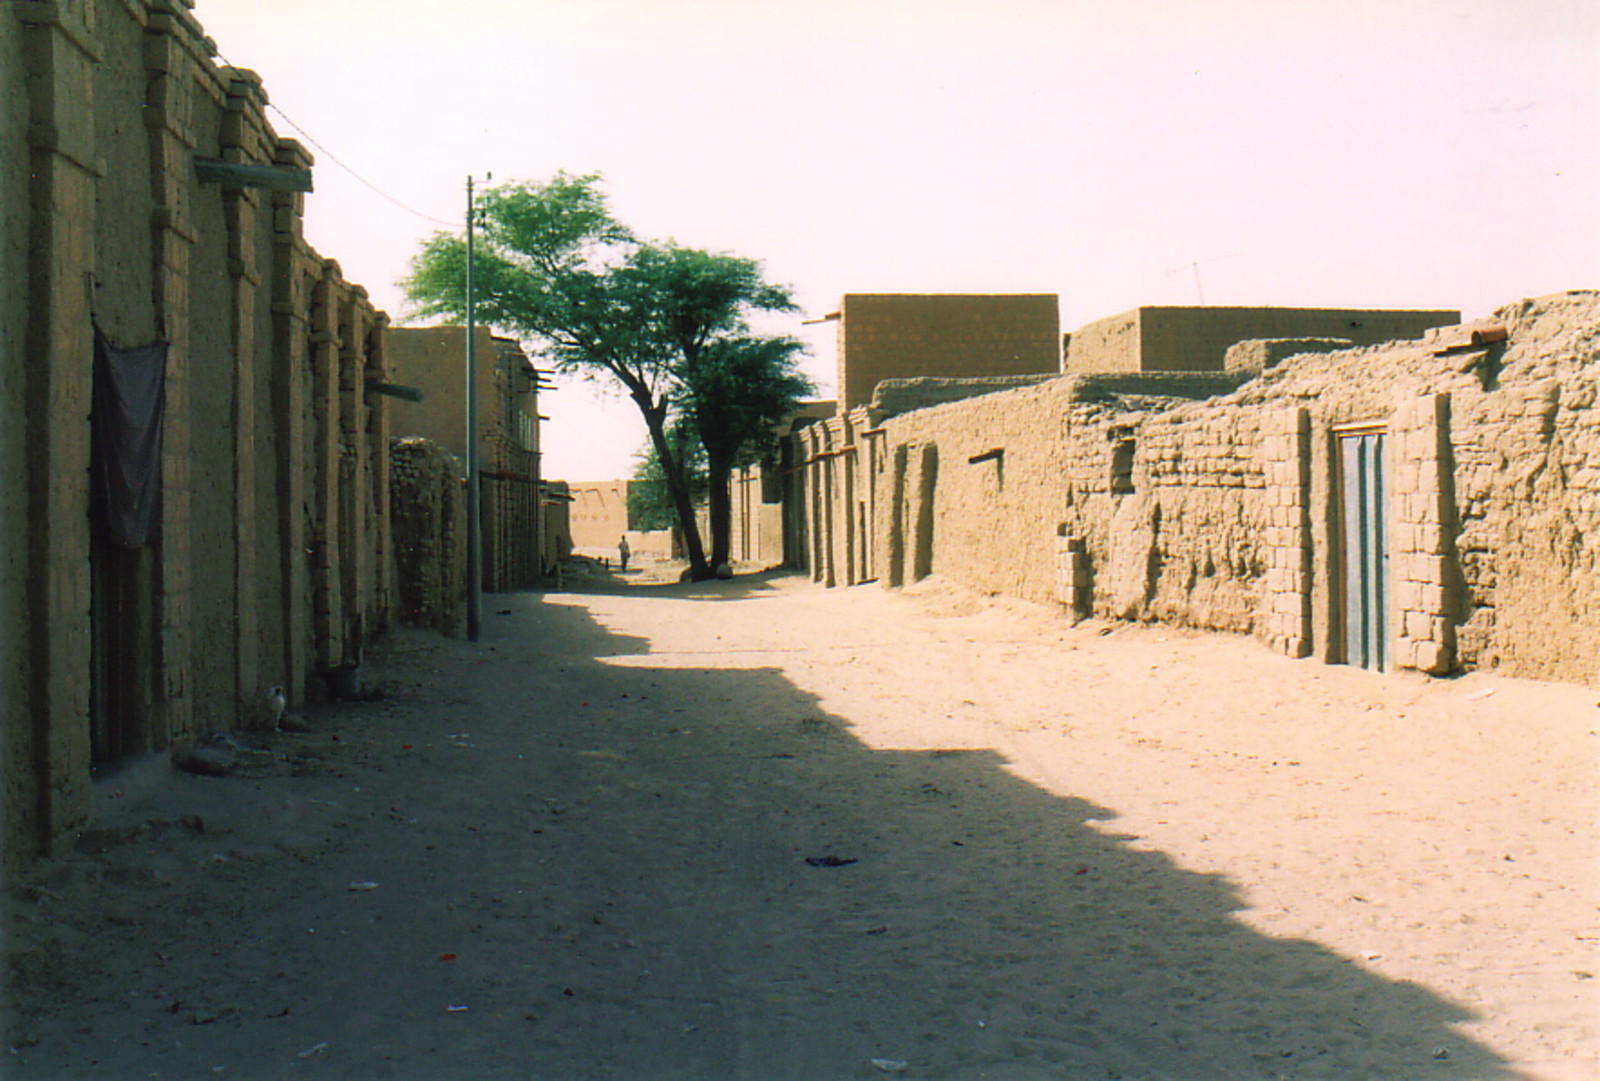 A street in Timbuktu